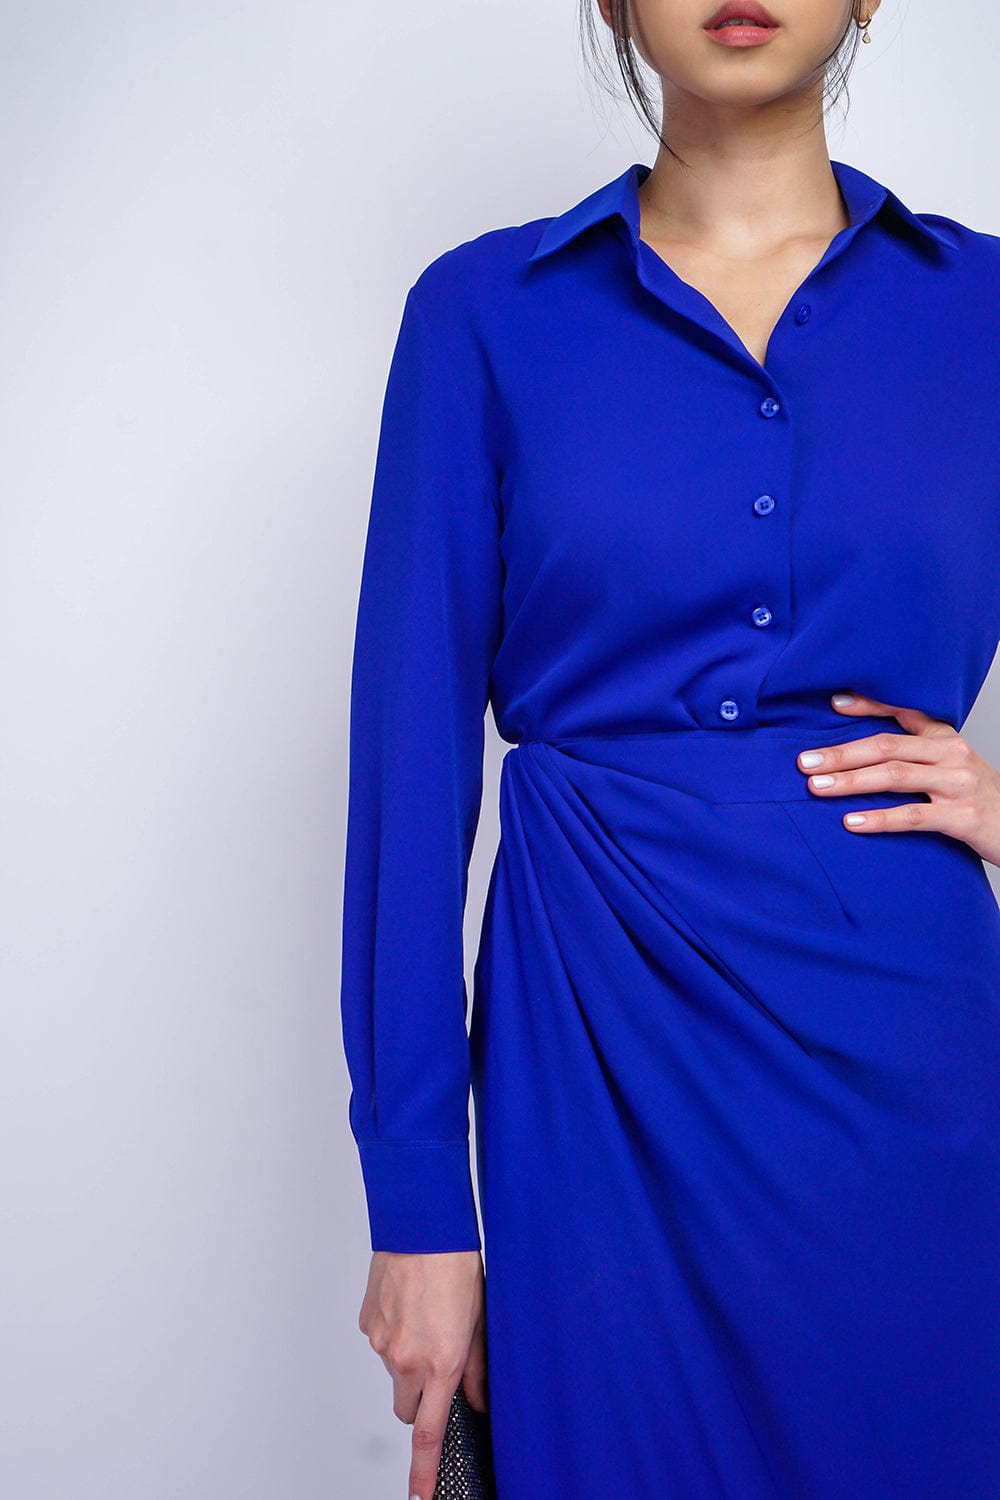 TOPS Cobalt Blue Button Up Jennifer Dress Shirt - Chloe Dao